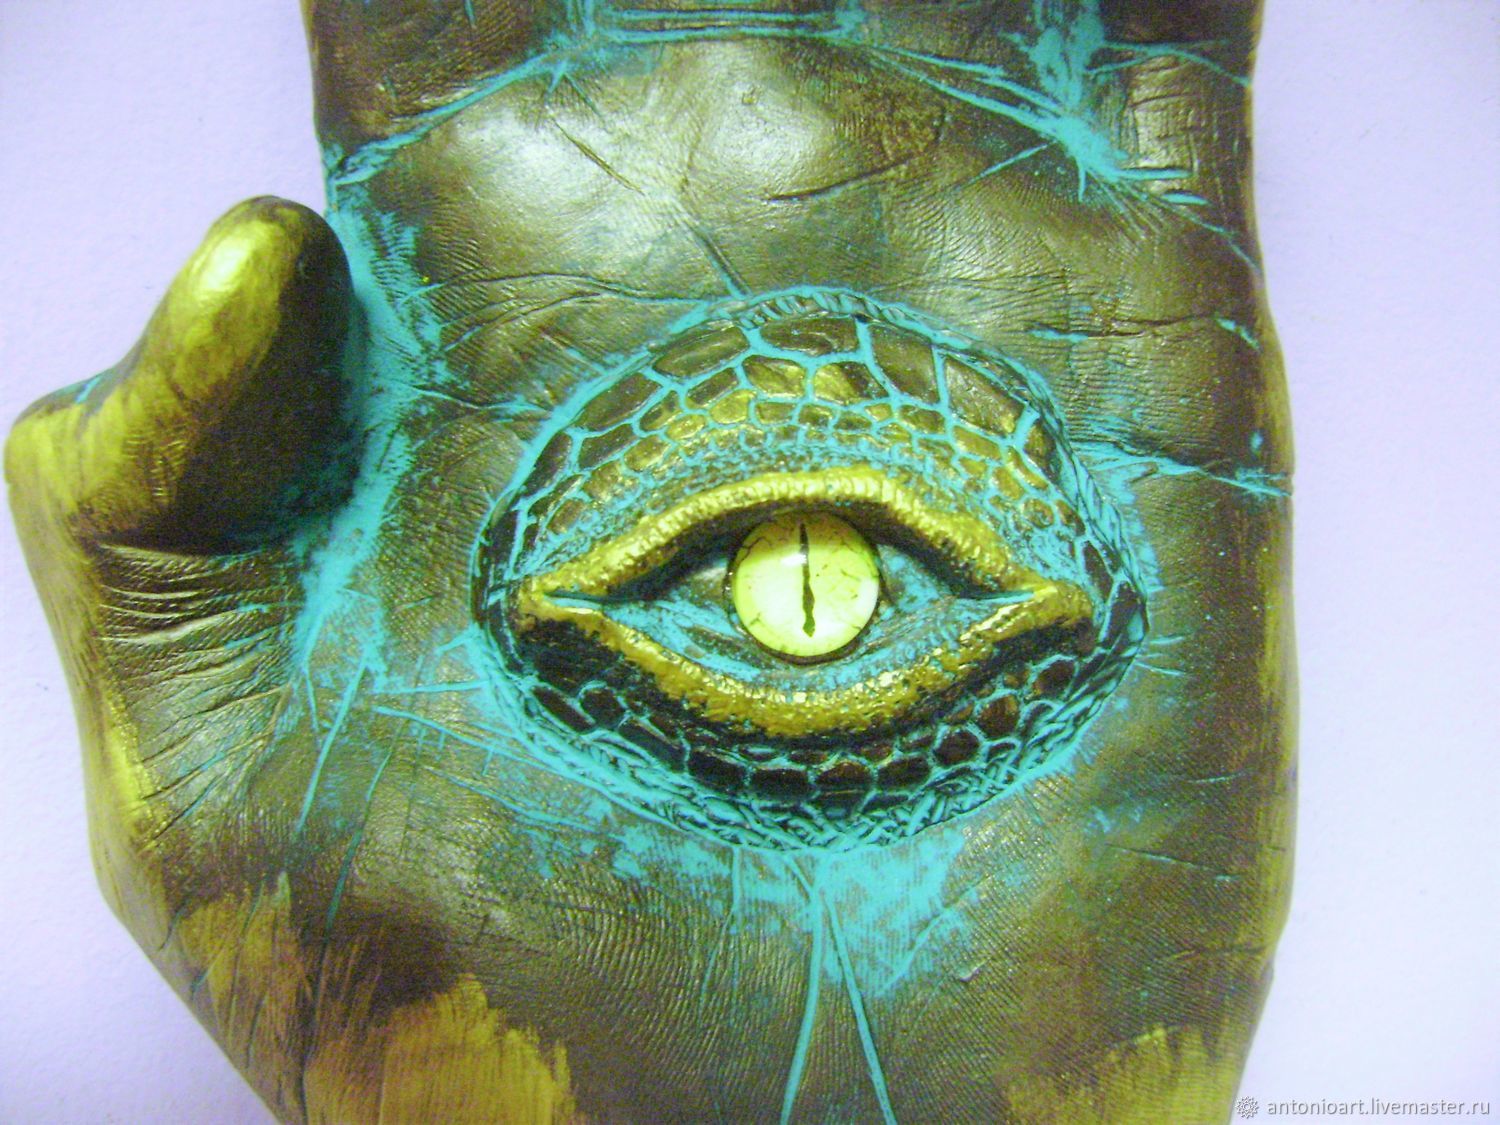 Желтые глаза рептилии арты11